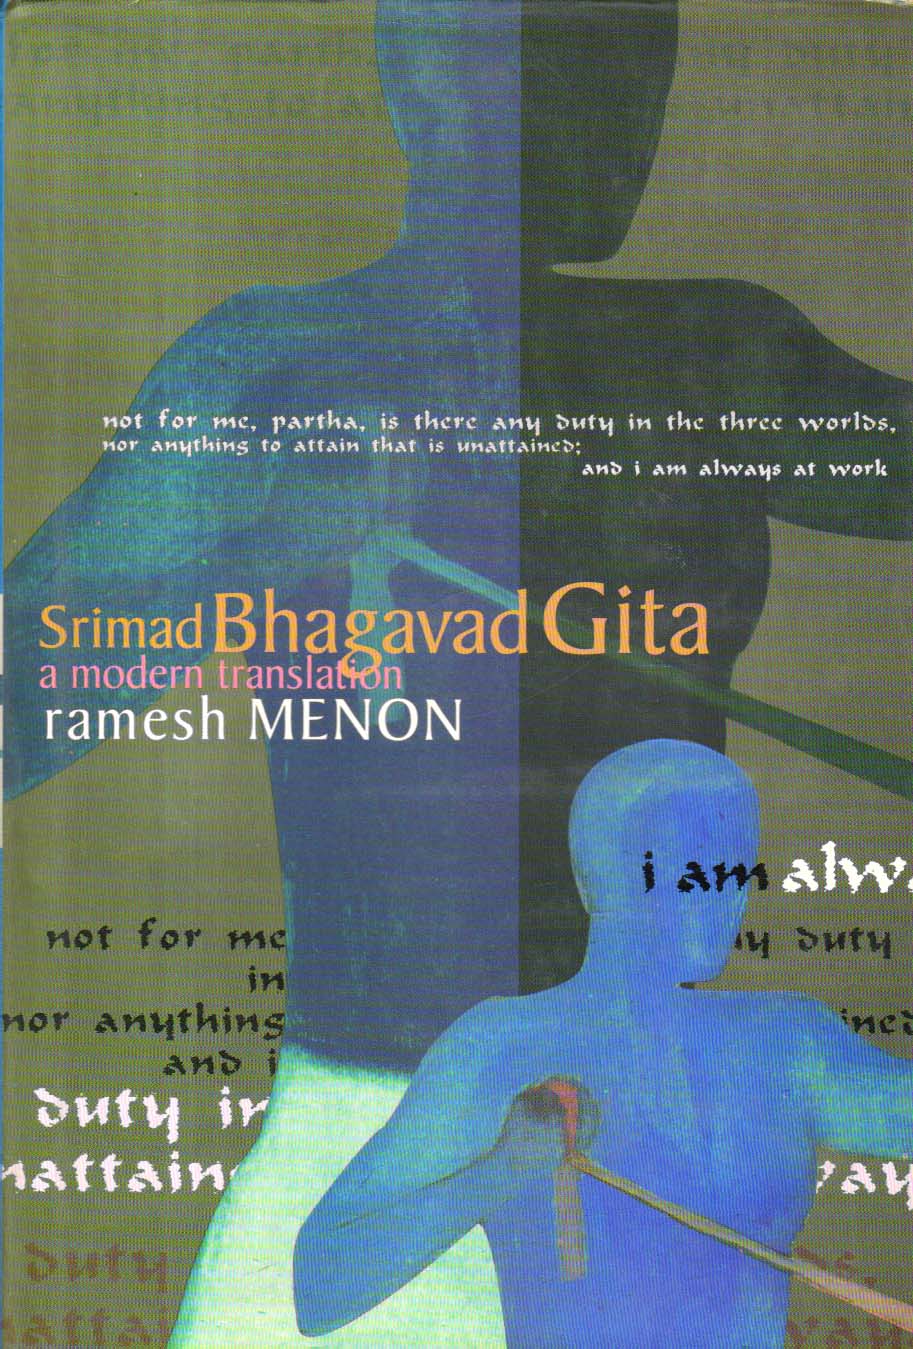 Srimad Bhagavad Gita.